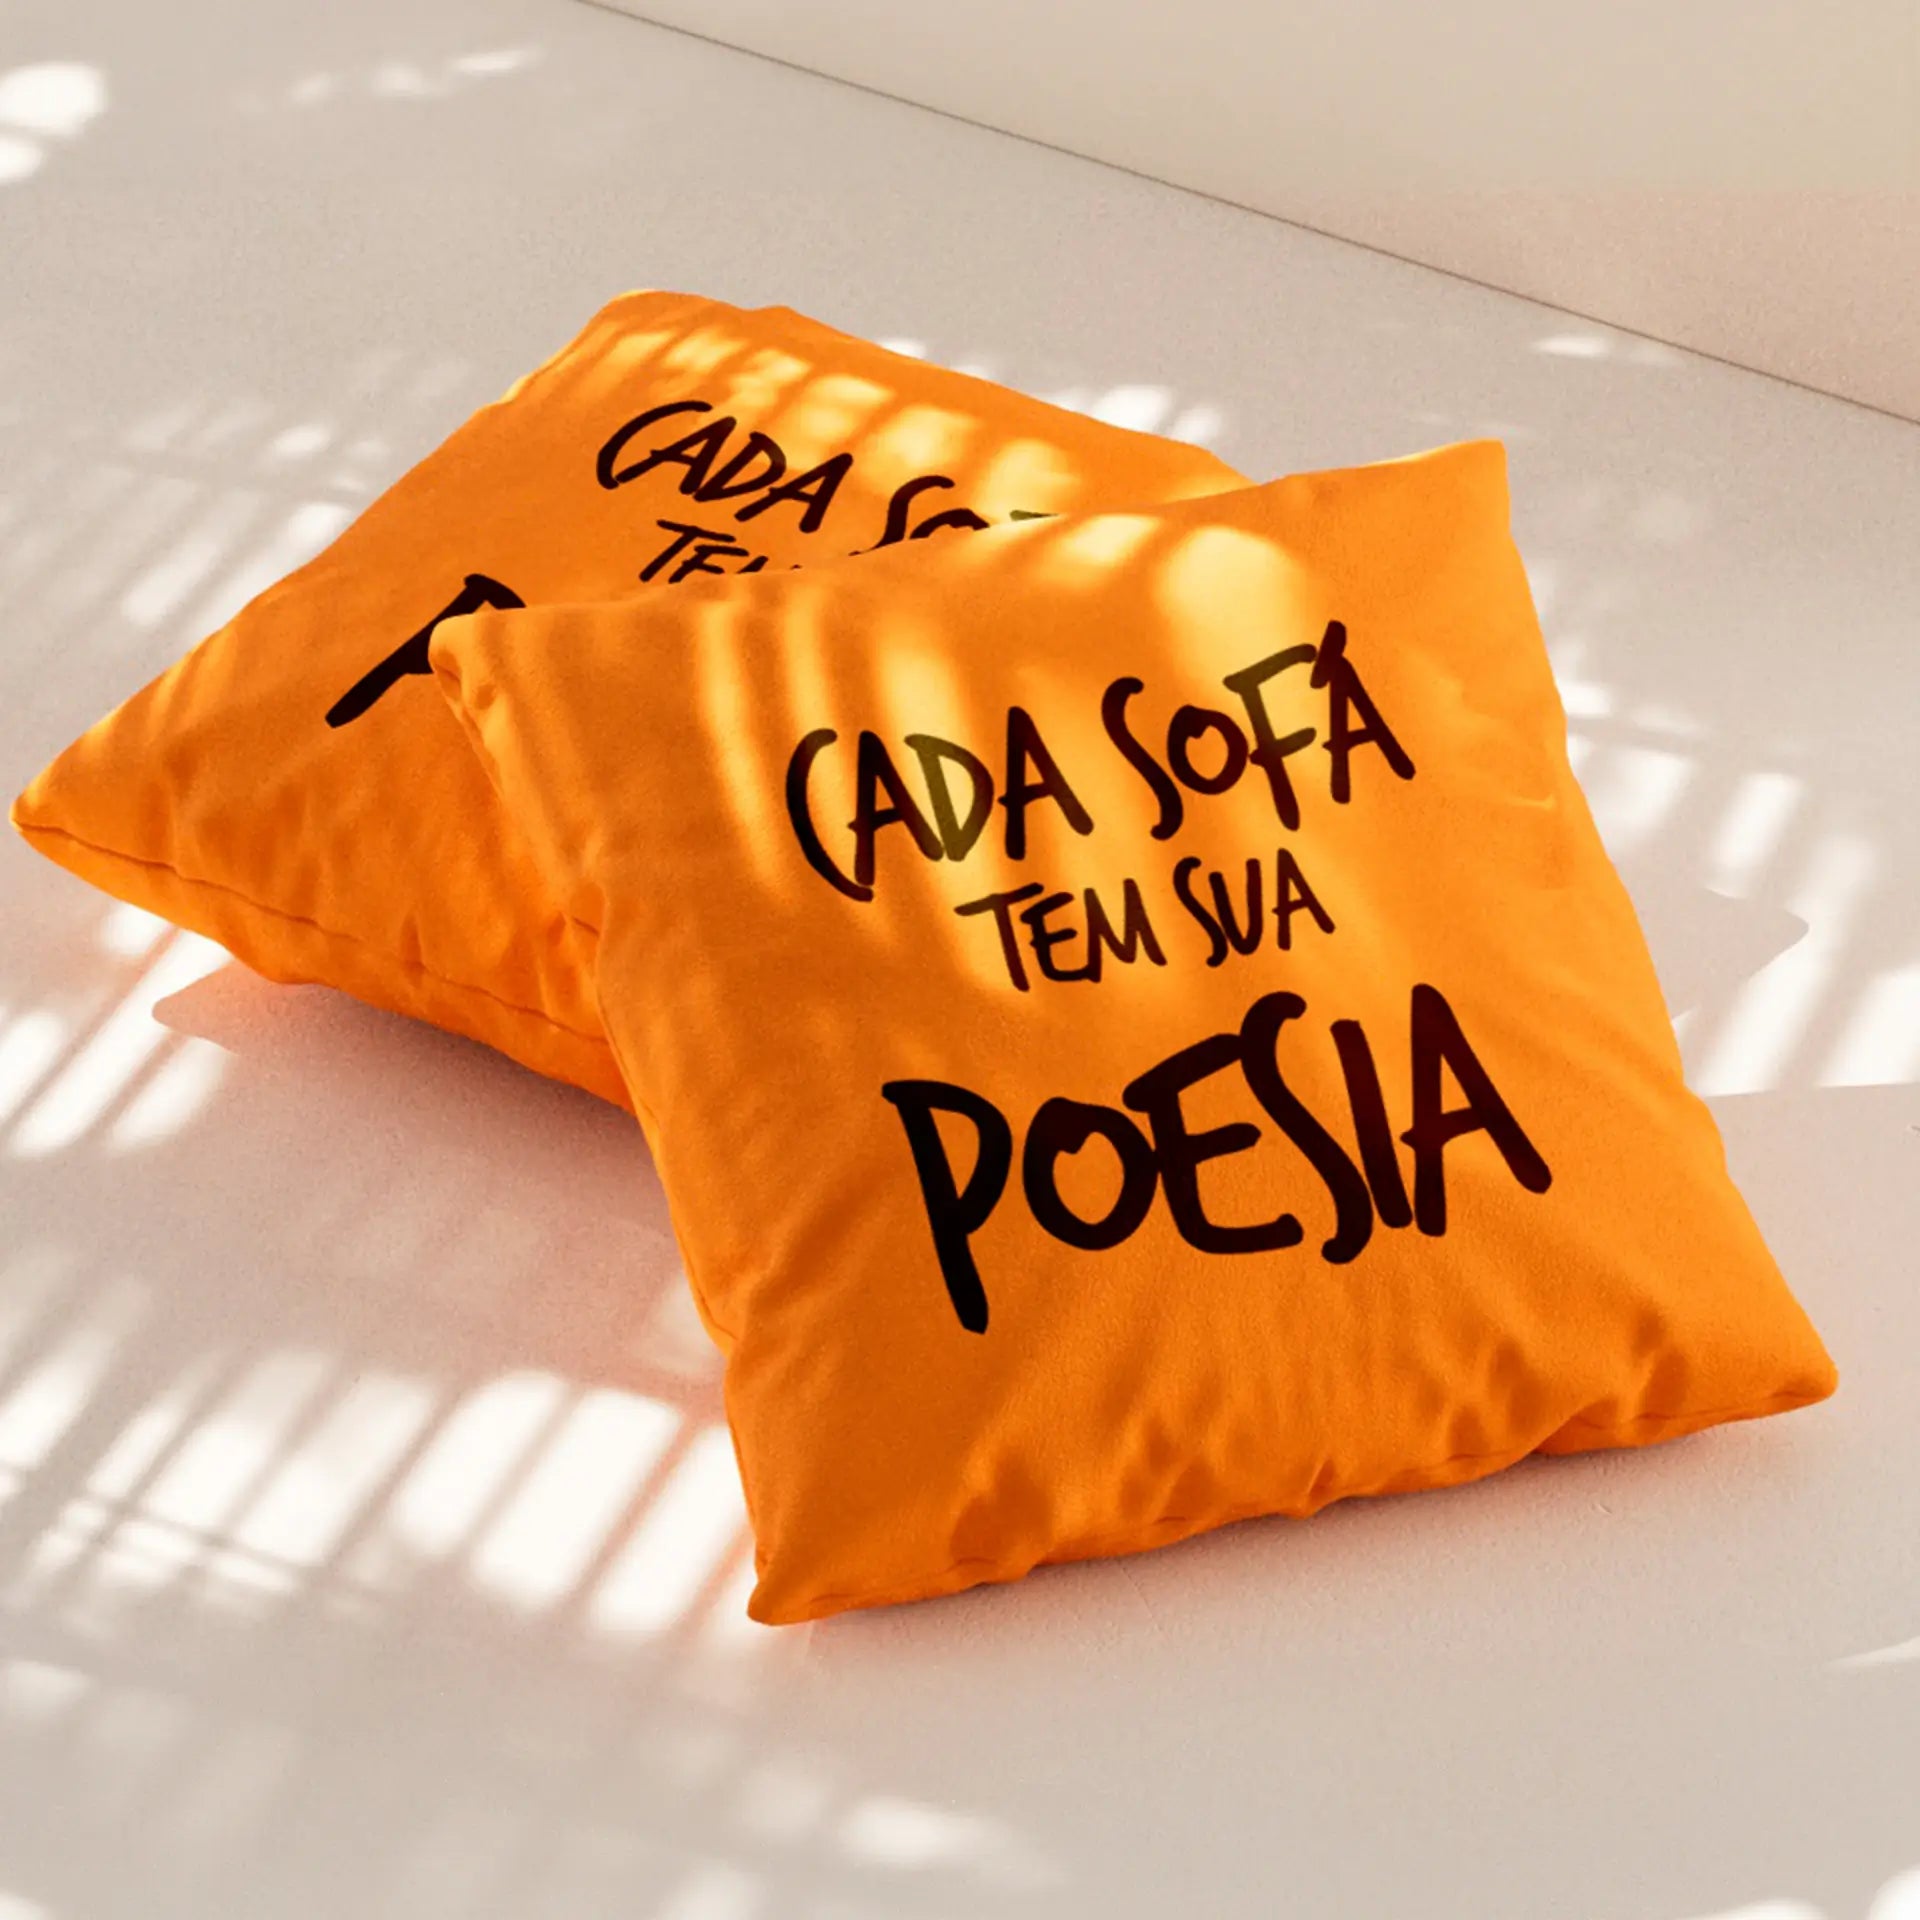 Almofada Estampada Exclusiva Sofá na Caixa - Cada Sofá tem sua Poesia - 40X40cm (Especial)